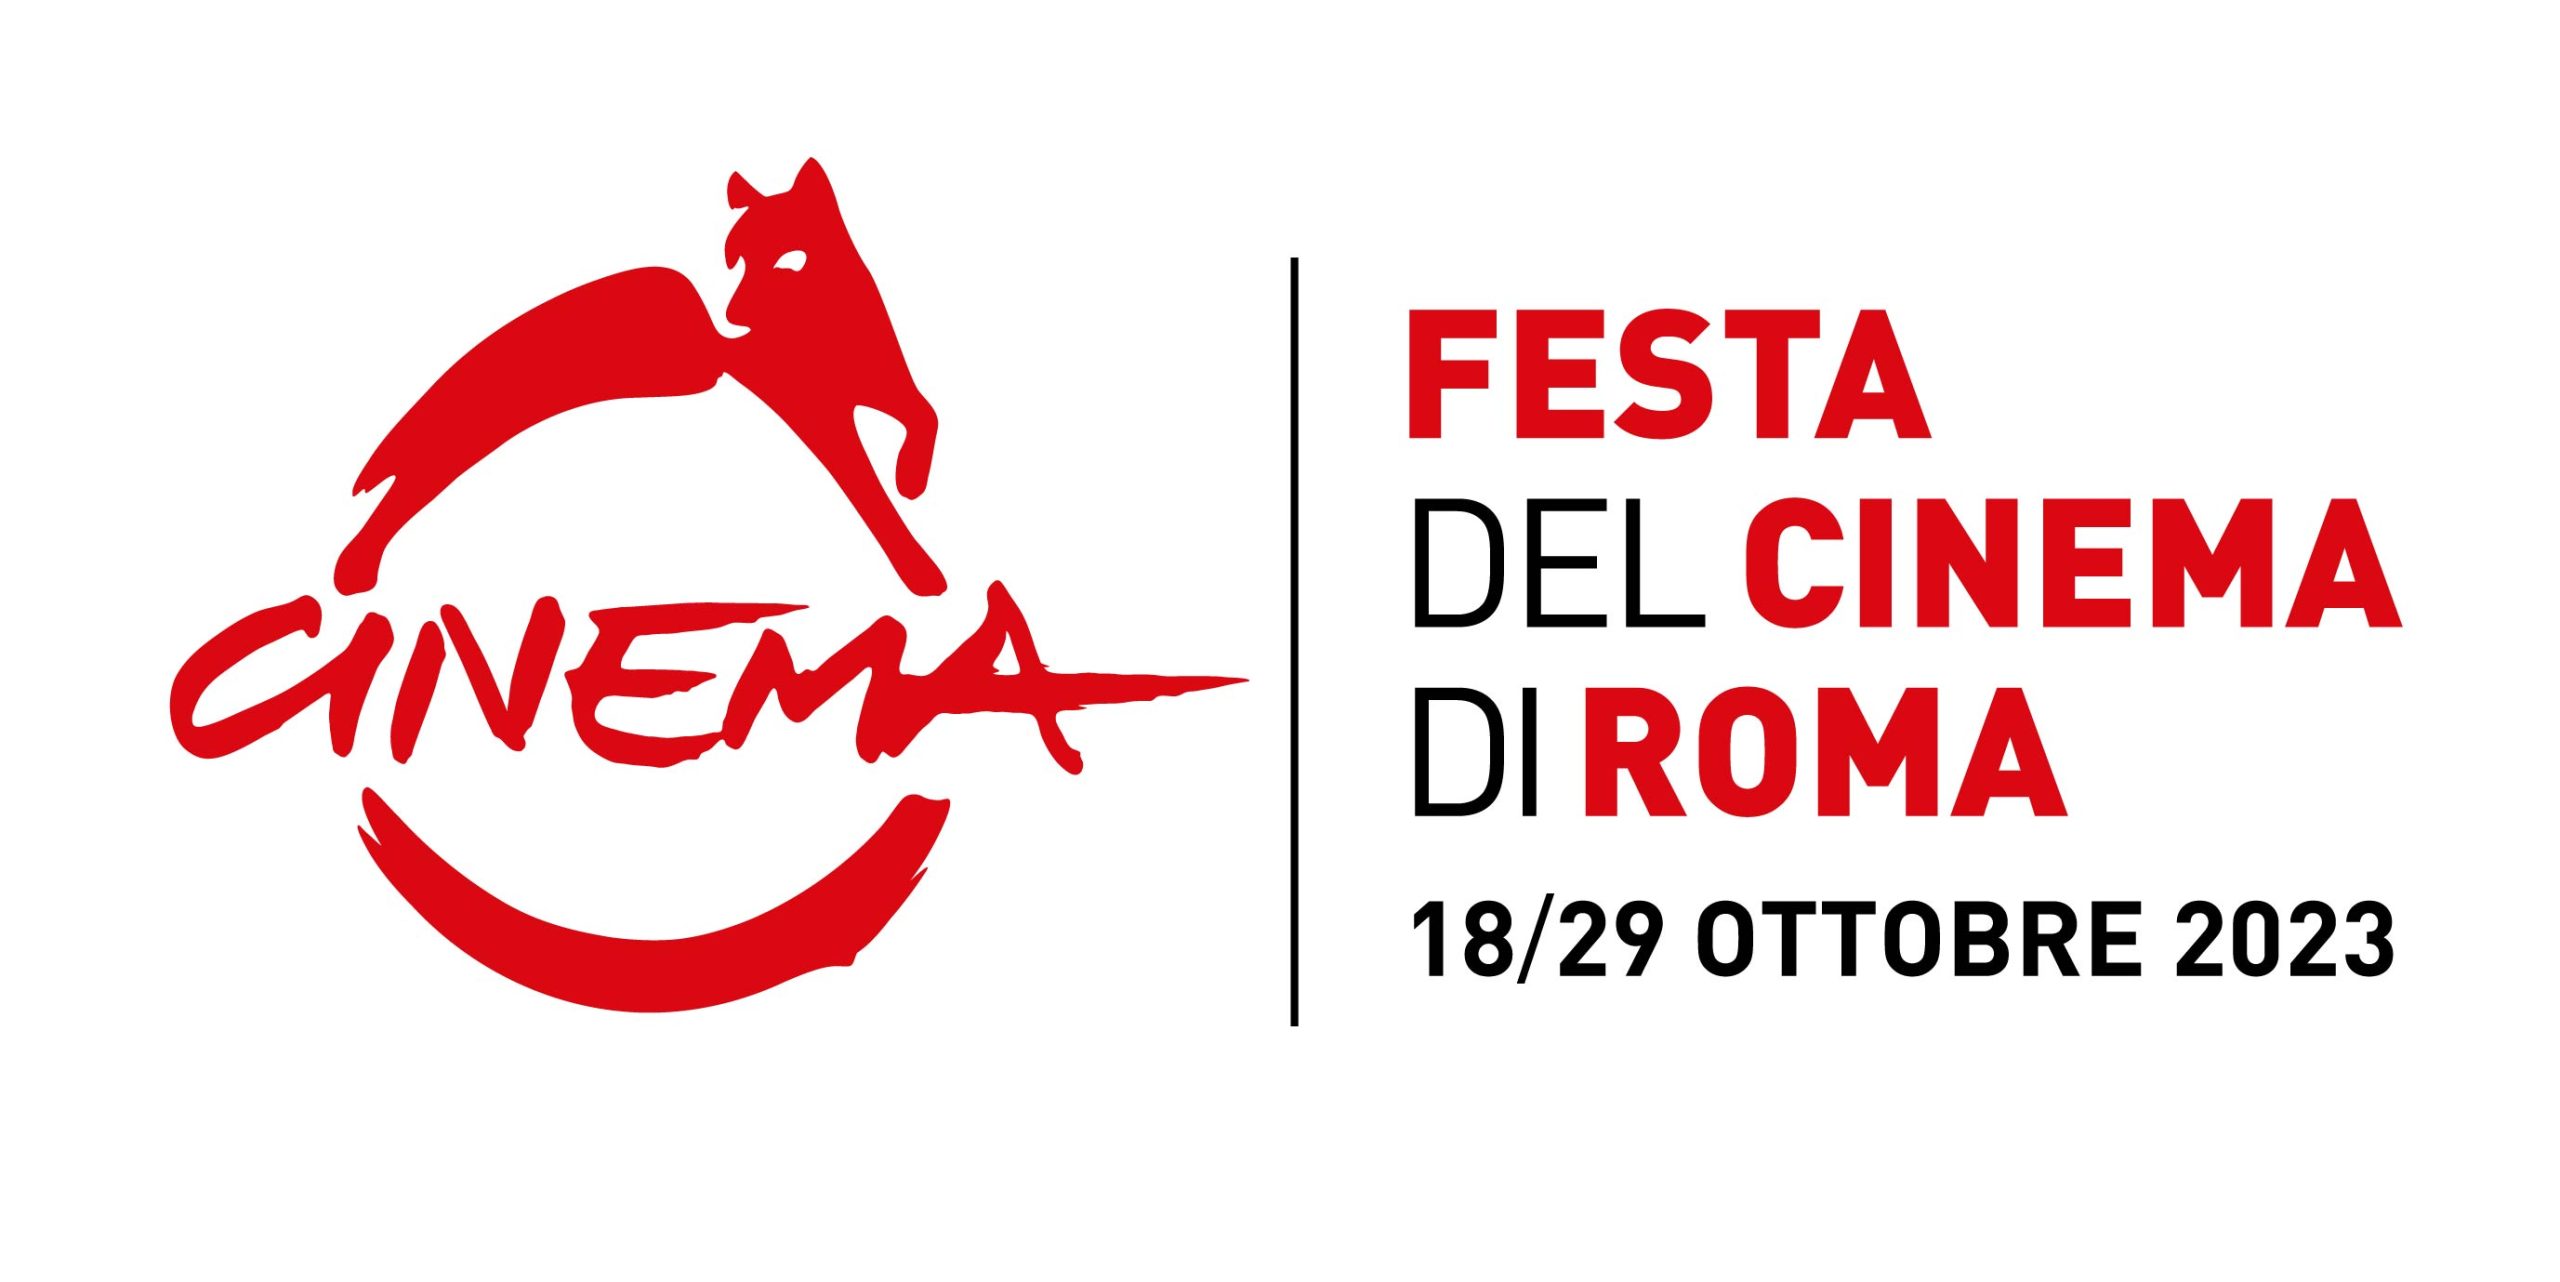 festa del cinema di roma 2023